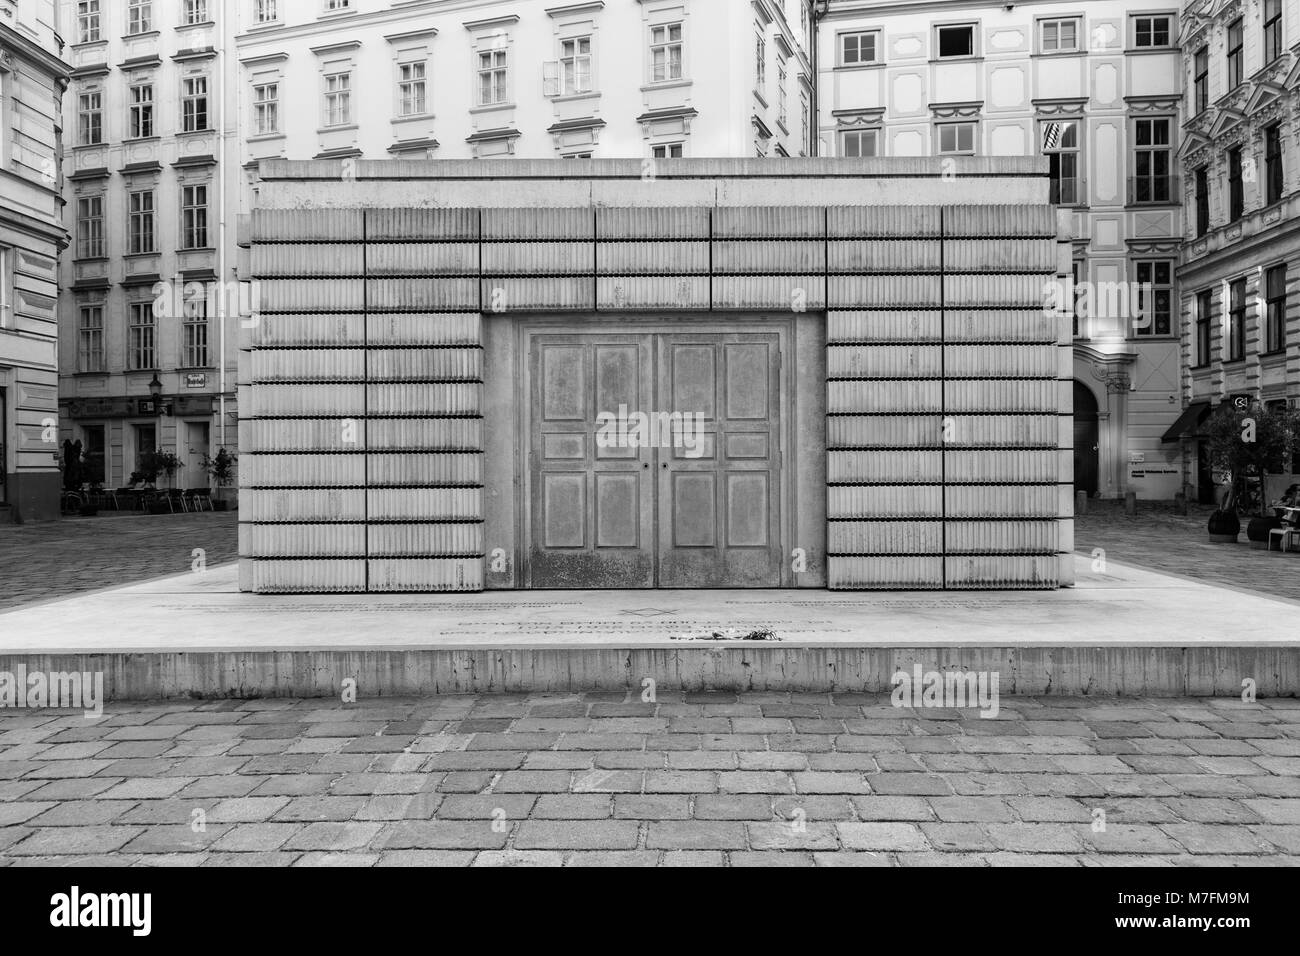 Il Memoriale dell'Olocausto noto anche come la libreria anonimi, sorge nella Judenplatz nel primo distretto di Vienna. Progettato da Rachel Whiteread. Foto Stock